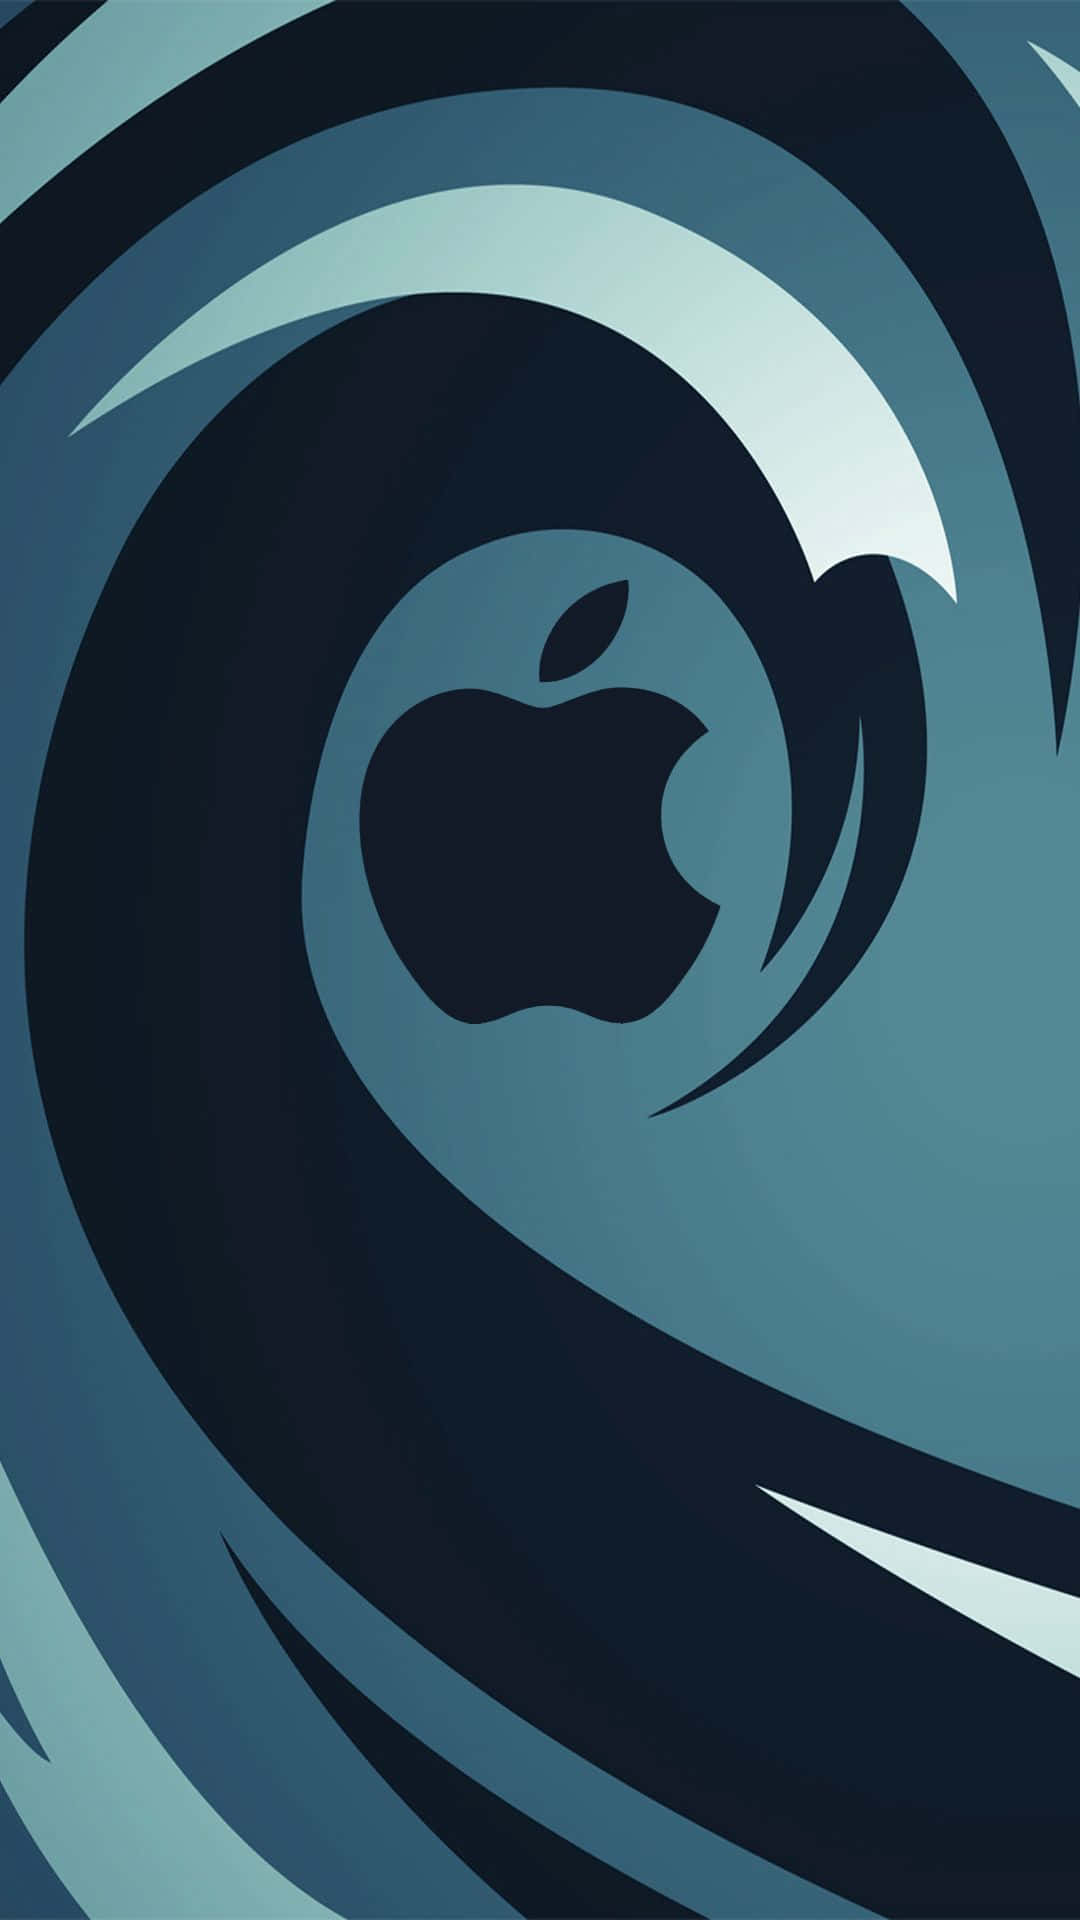 Apple's nye logo er en bølge med en bølge som baggrund. Wallpaper